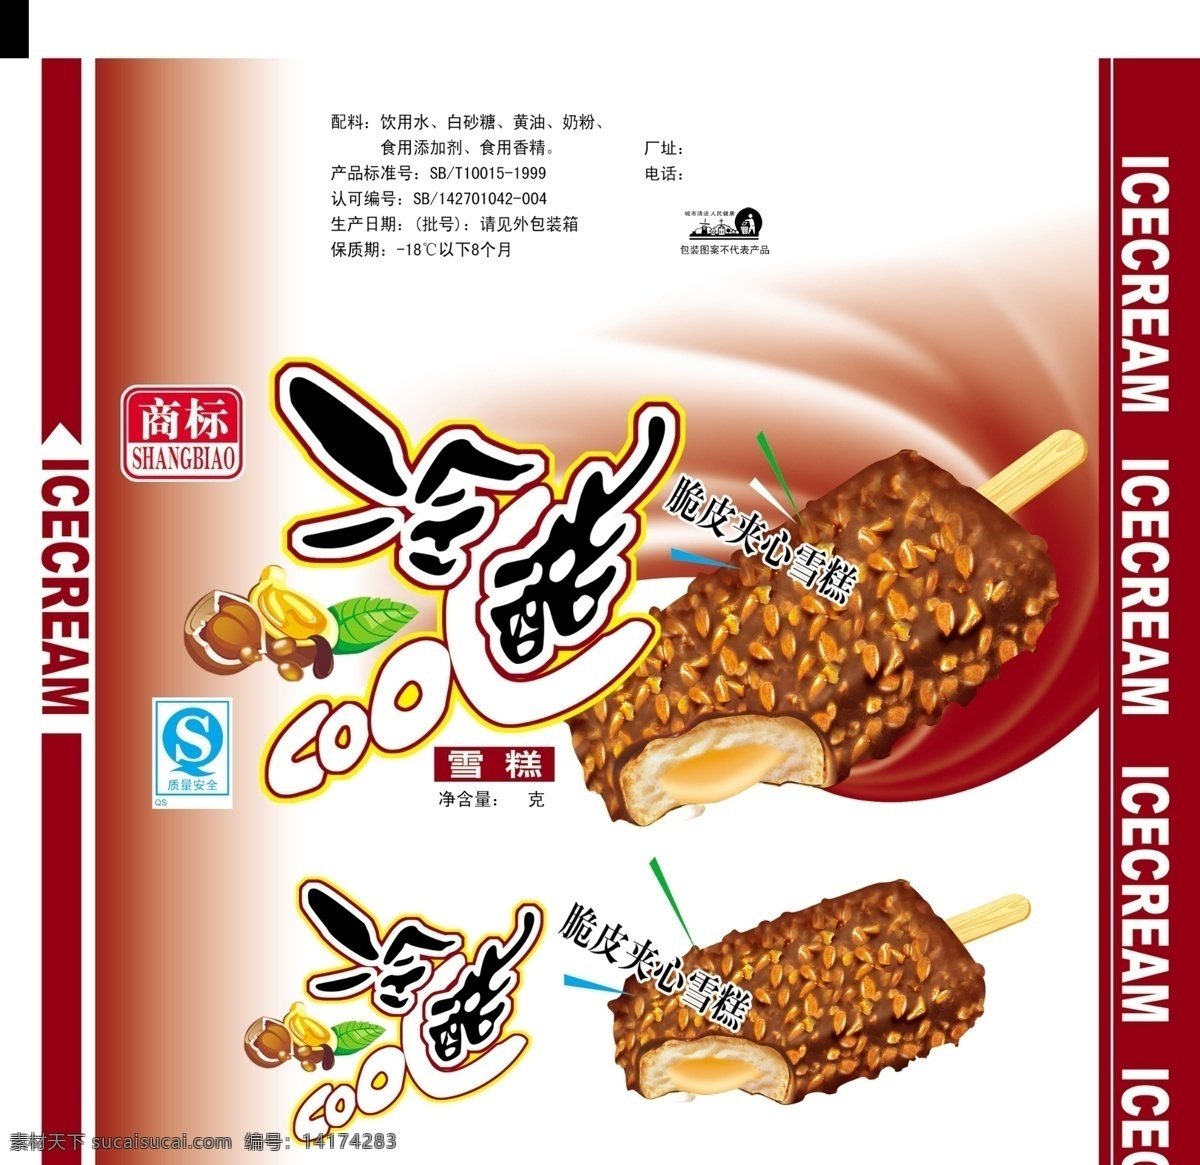 食品包装设计 包装模板 分层素材 格式 psd格式 设计素材 食品包装 psd源文件 白色